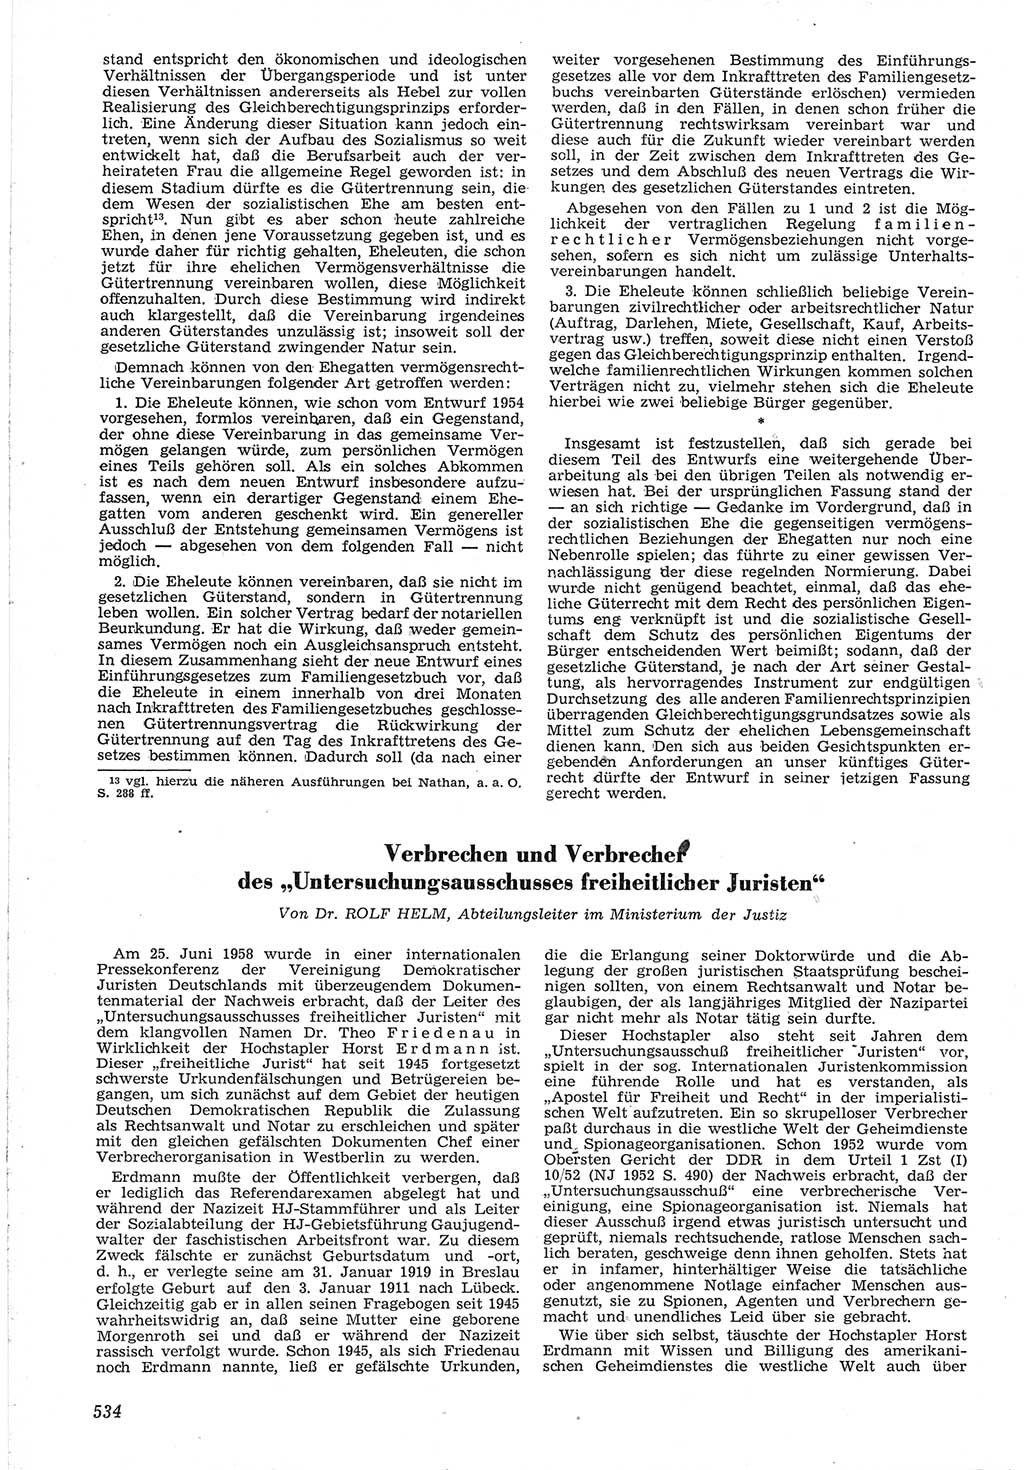 Neue Justiz (NJ), Zeitschrift für Recht und Rechtswissenschaft [Deutsche Demokratische Republik (DDR)], 12. Jahrgang 1958, Seite 534 (NJ DDR 1958, S. 534)